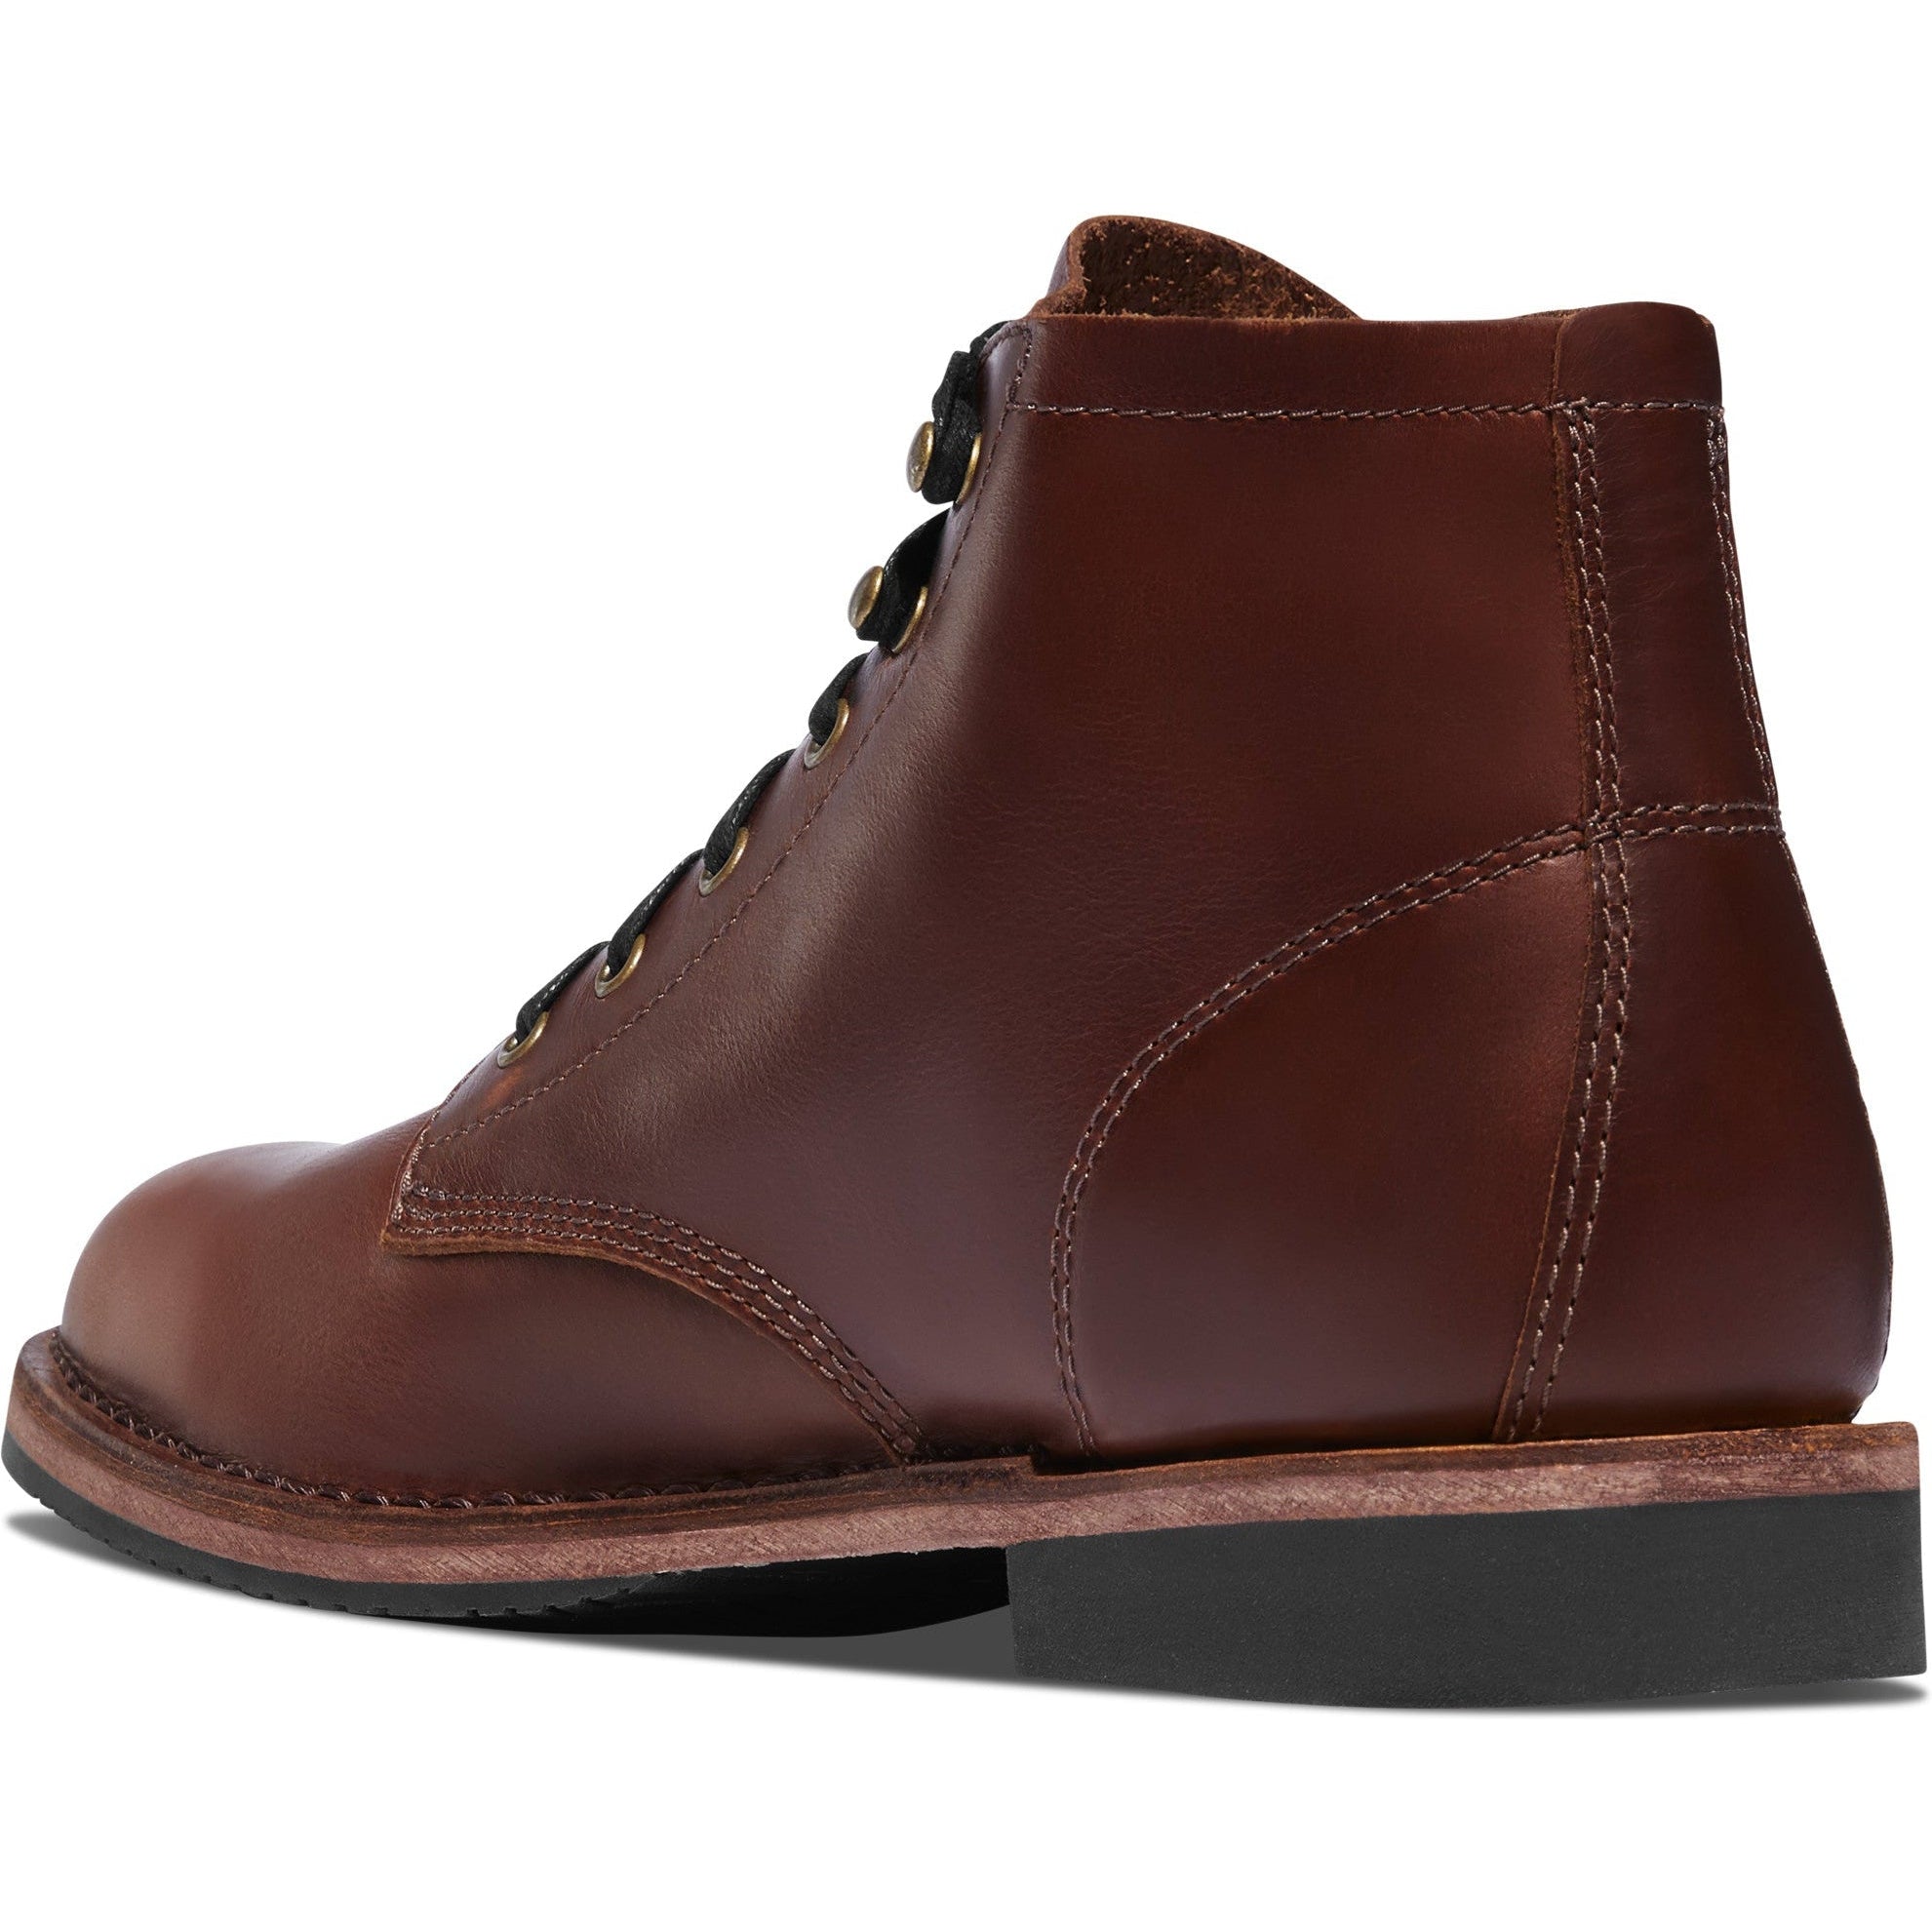 Danner Men's Danner Jack II 4.5" Lifestyle Leather Boot- Coffee- 34342  - Overlook Boots